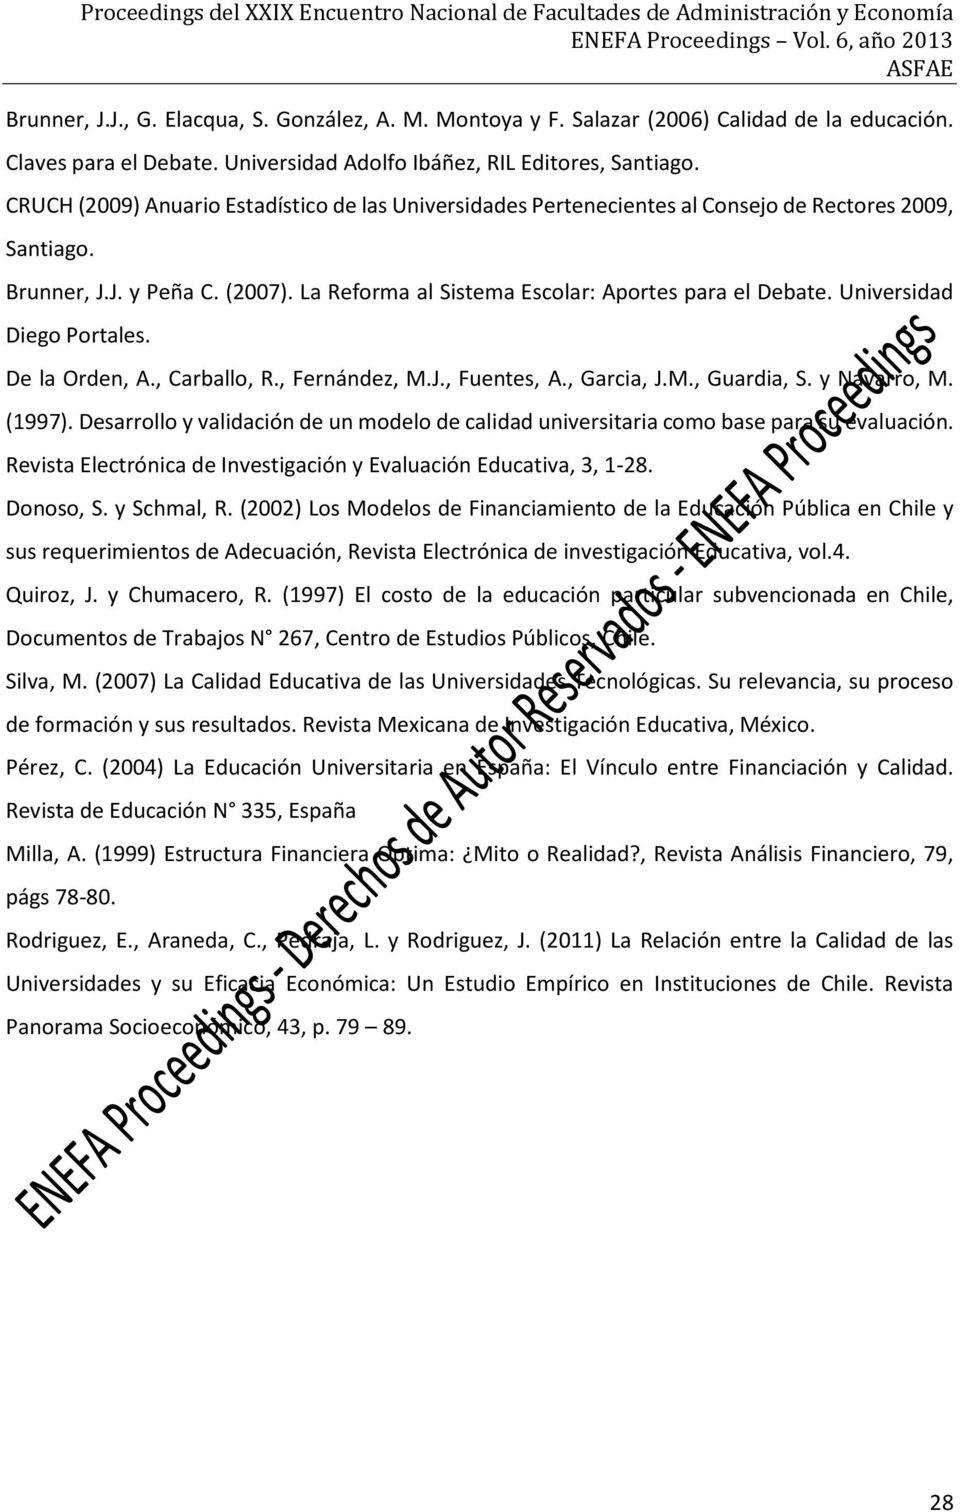 Universidad Diego Portales. De la Orden, A., Carballo, R., Fernández, M.J., Fuentes, A., Garcia, J.M., Guardia, S. y Navarro, M. (1997).